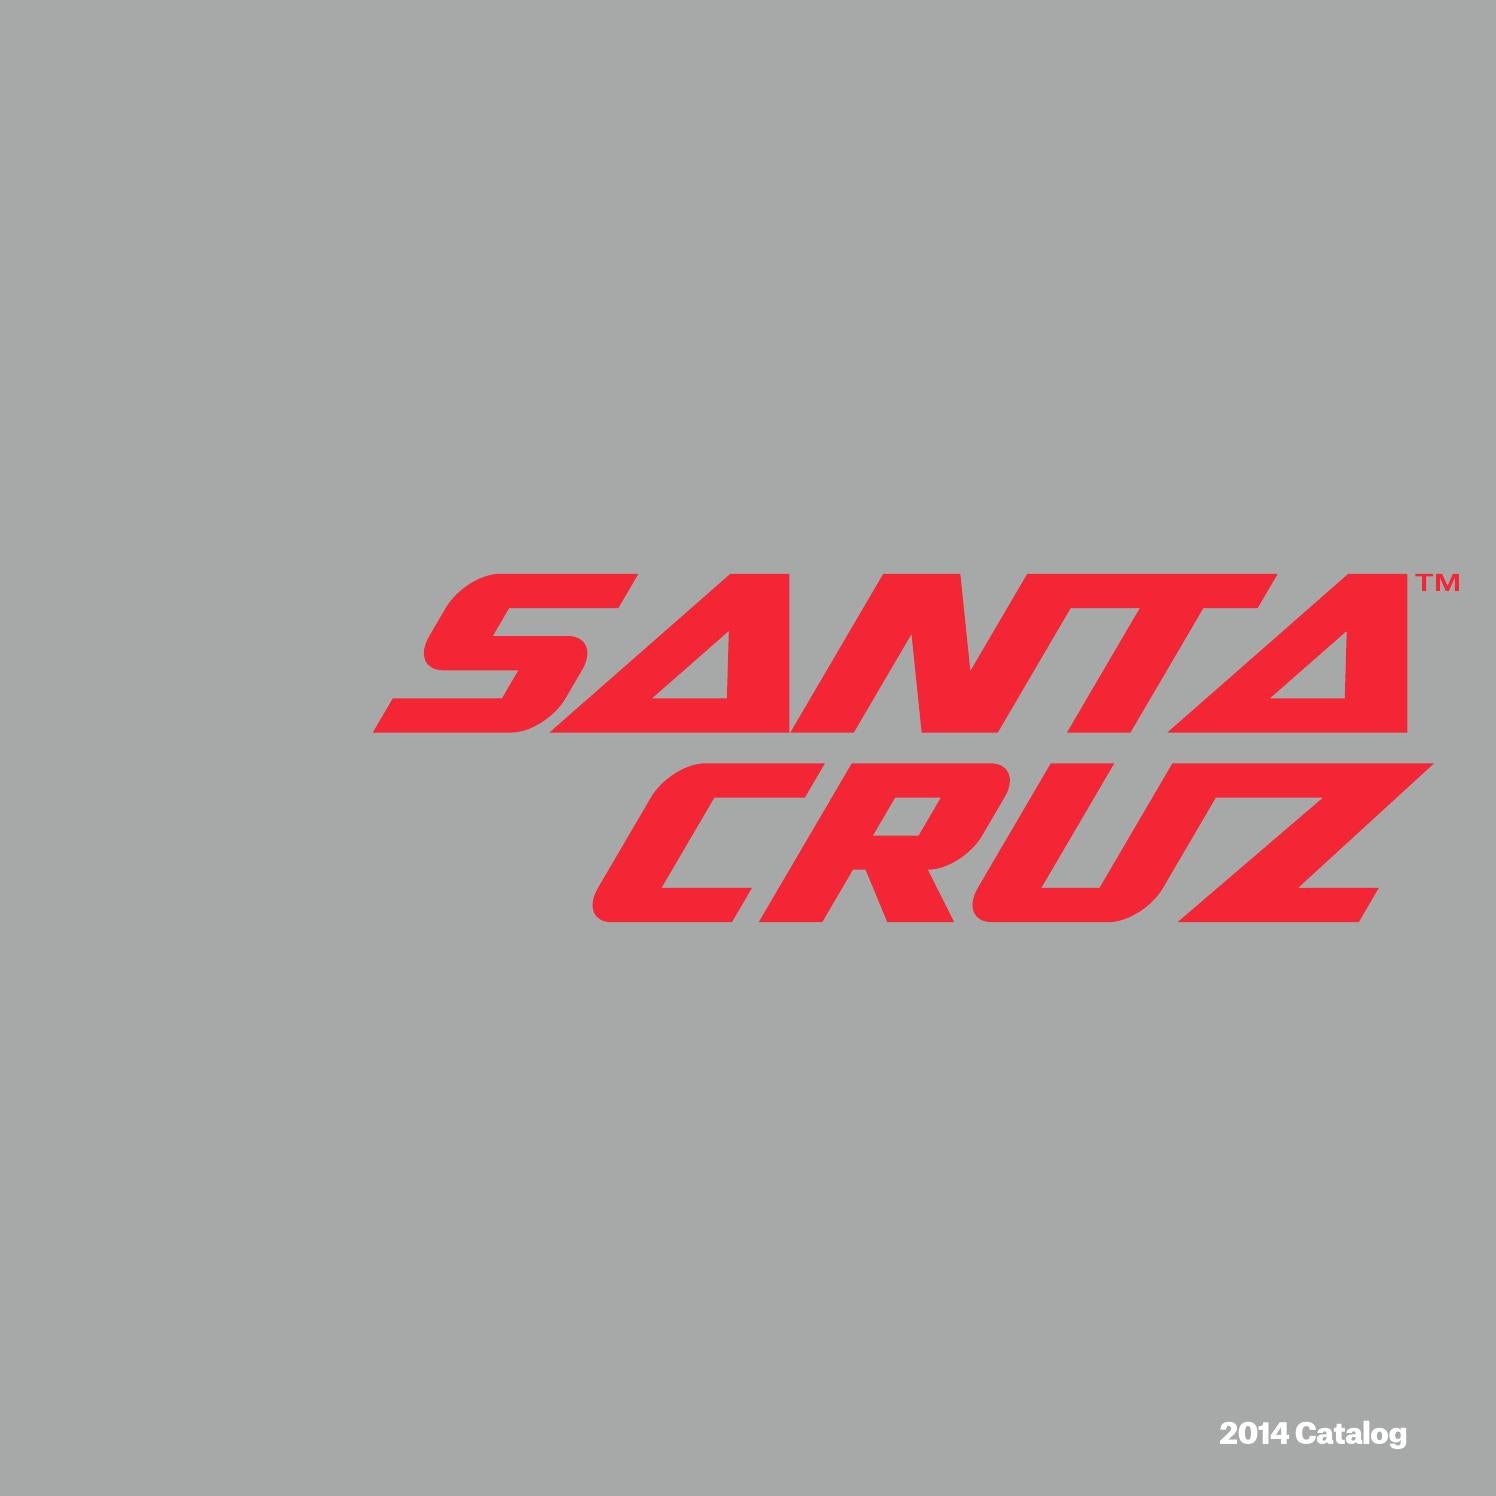 Santa Cruz Iphone Wallpapers